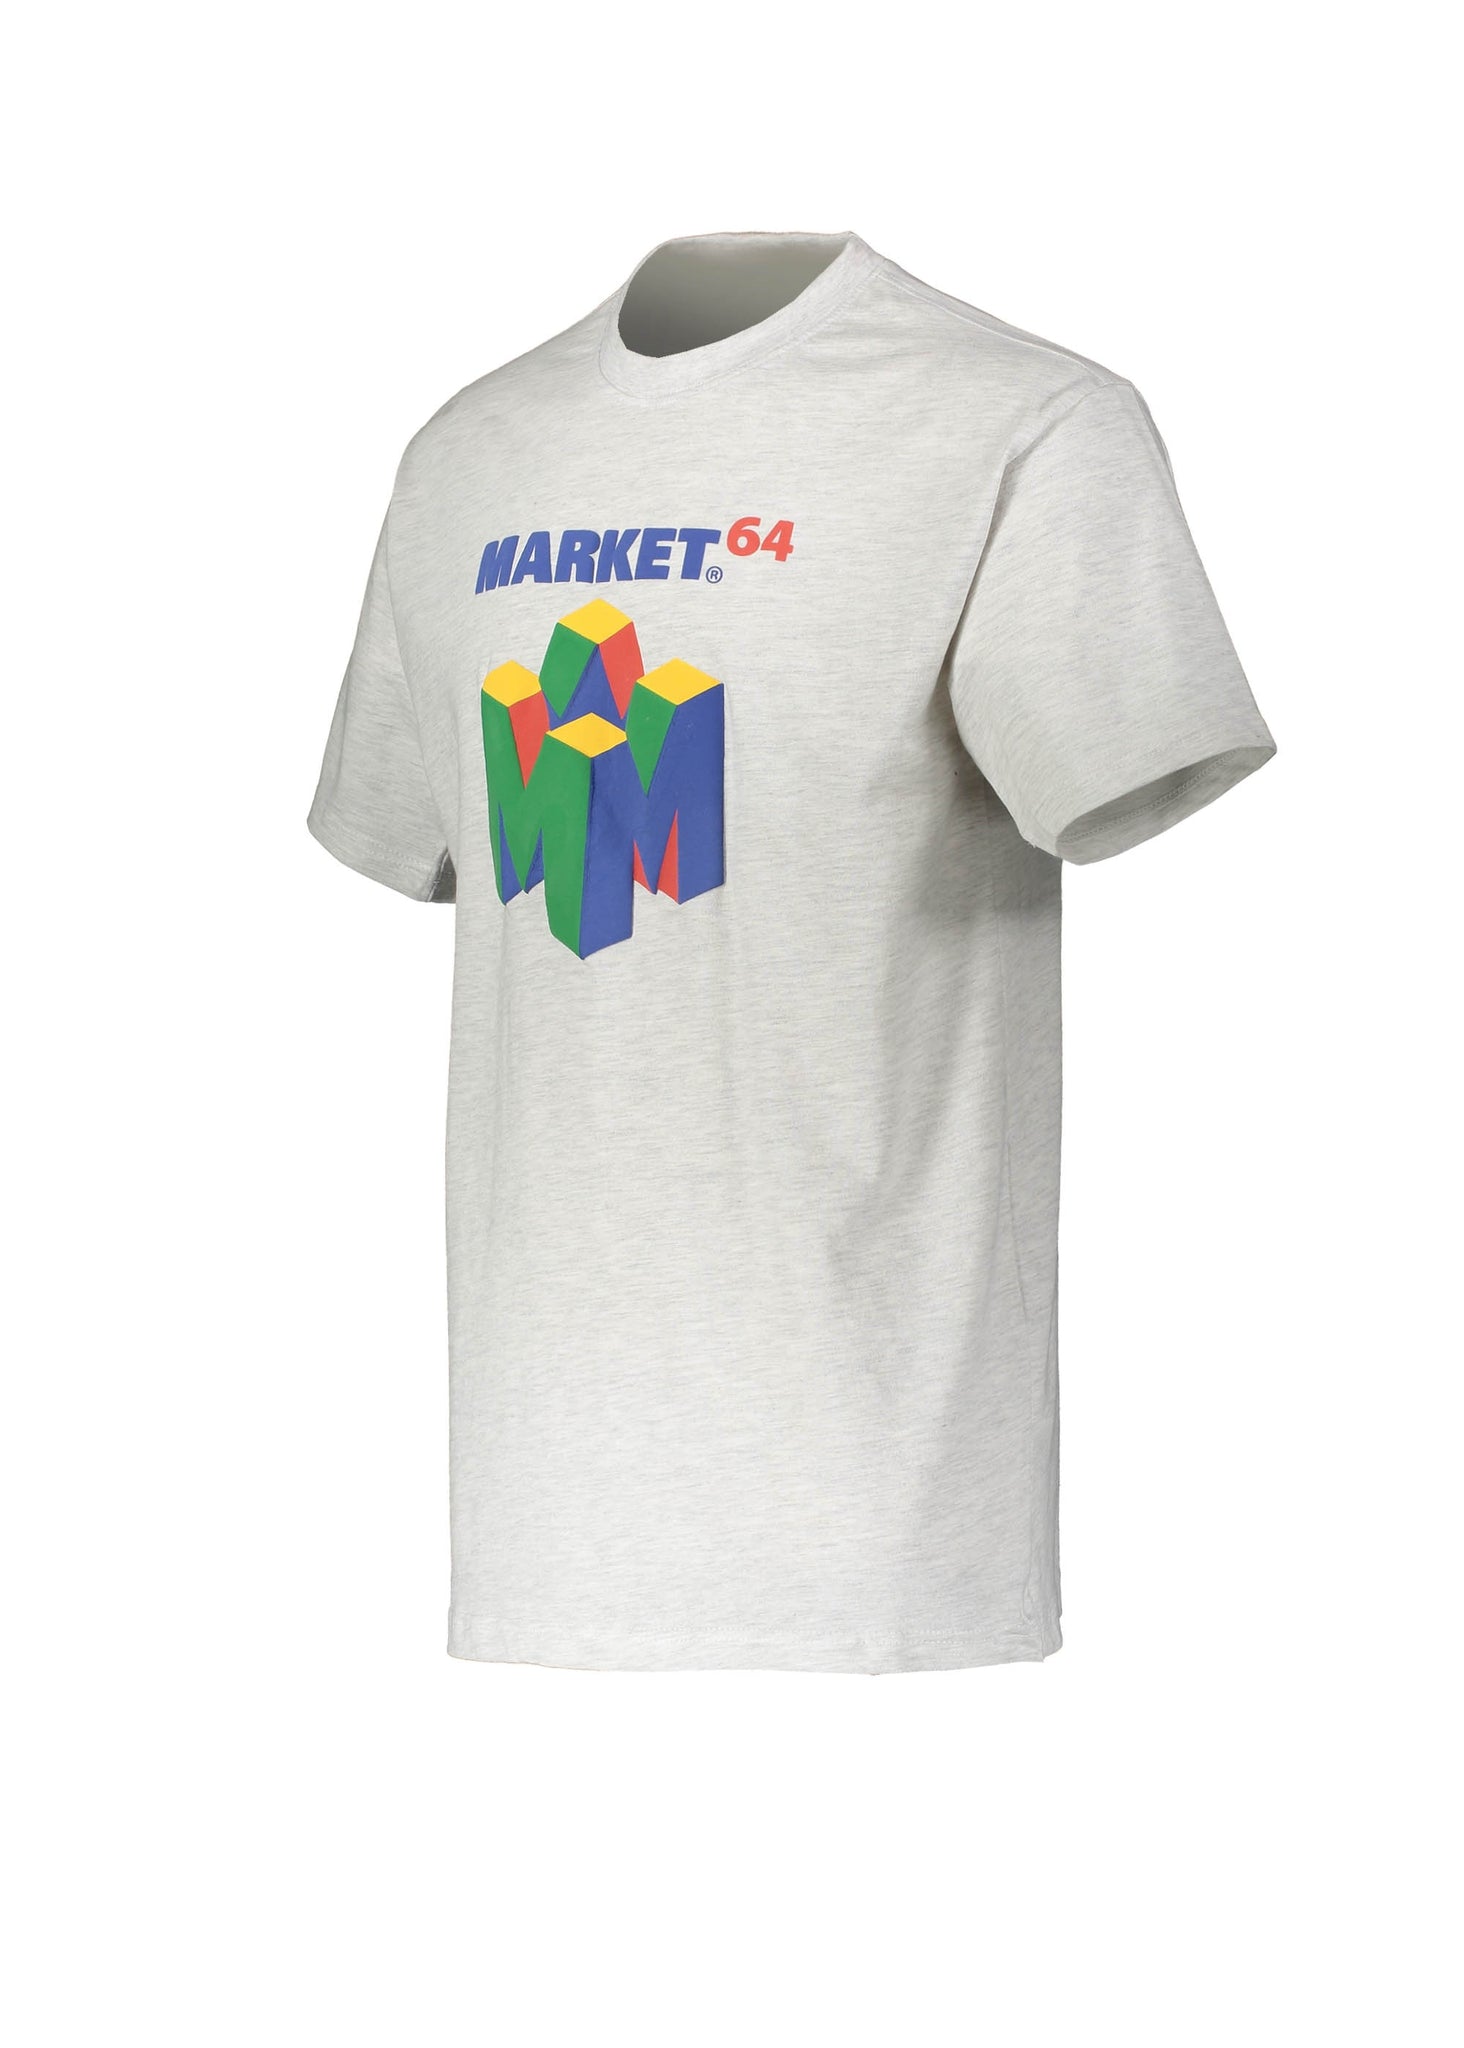 Market M64 T-Shirt - Ash